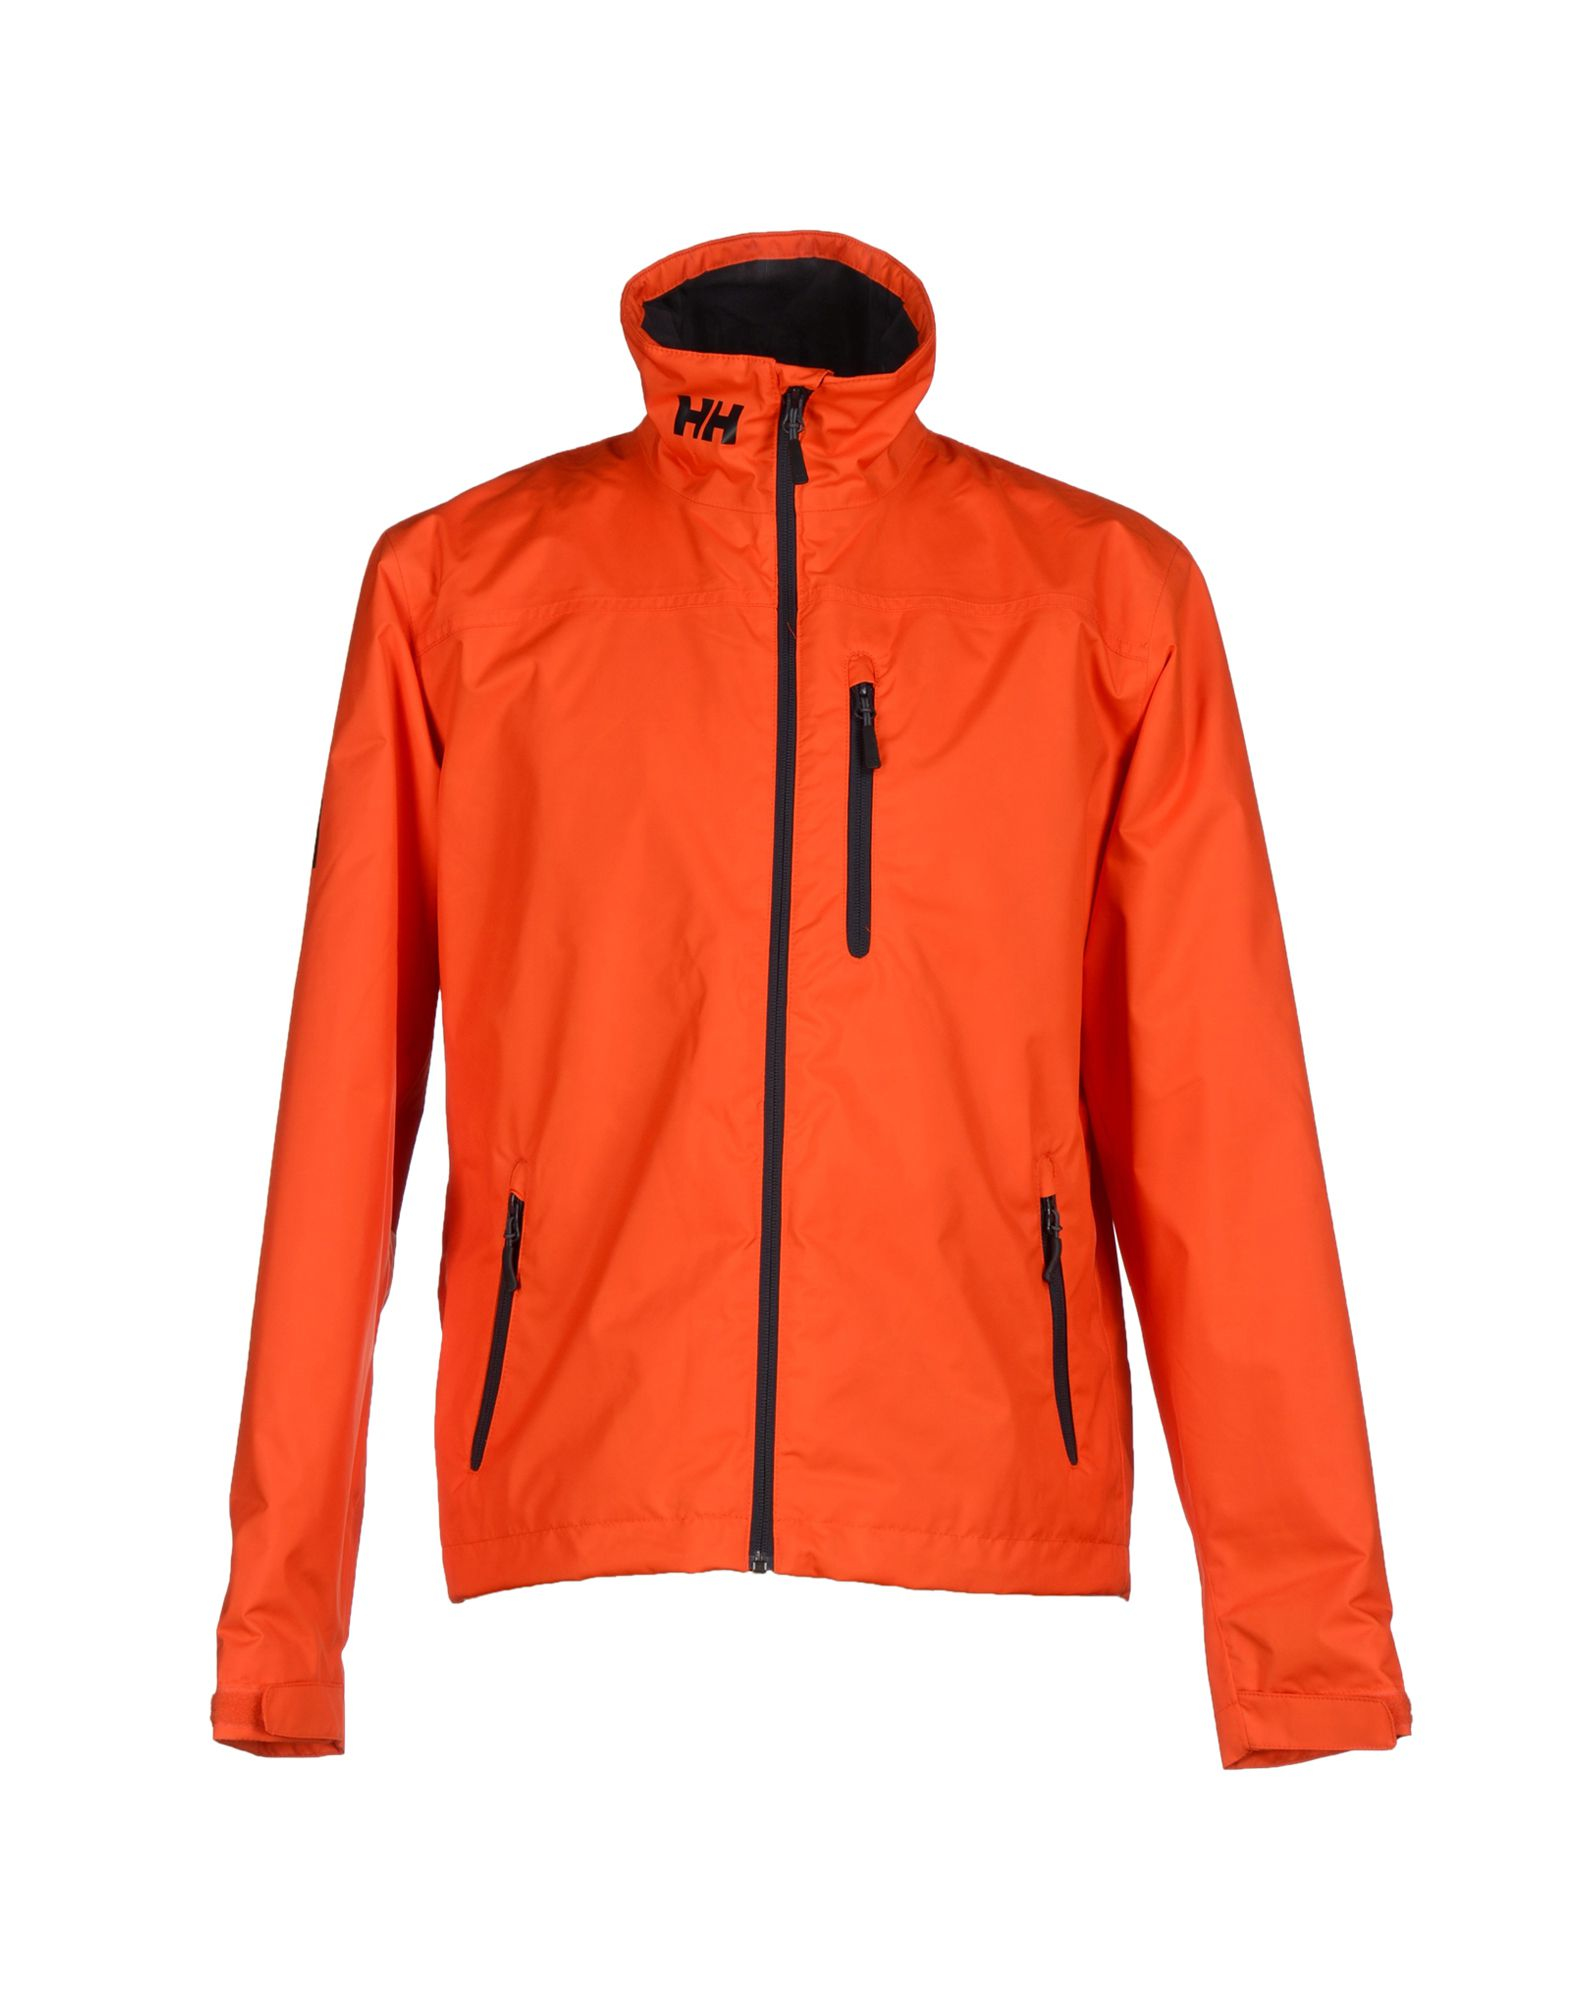 Lyst - Helly Hansen Jacket in Orange for Men